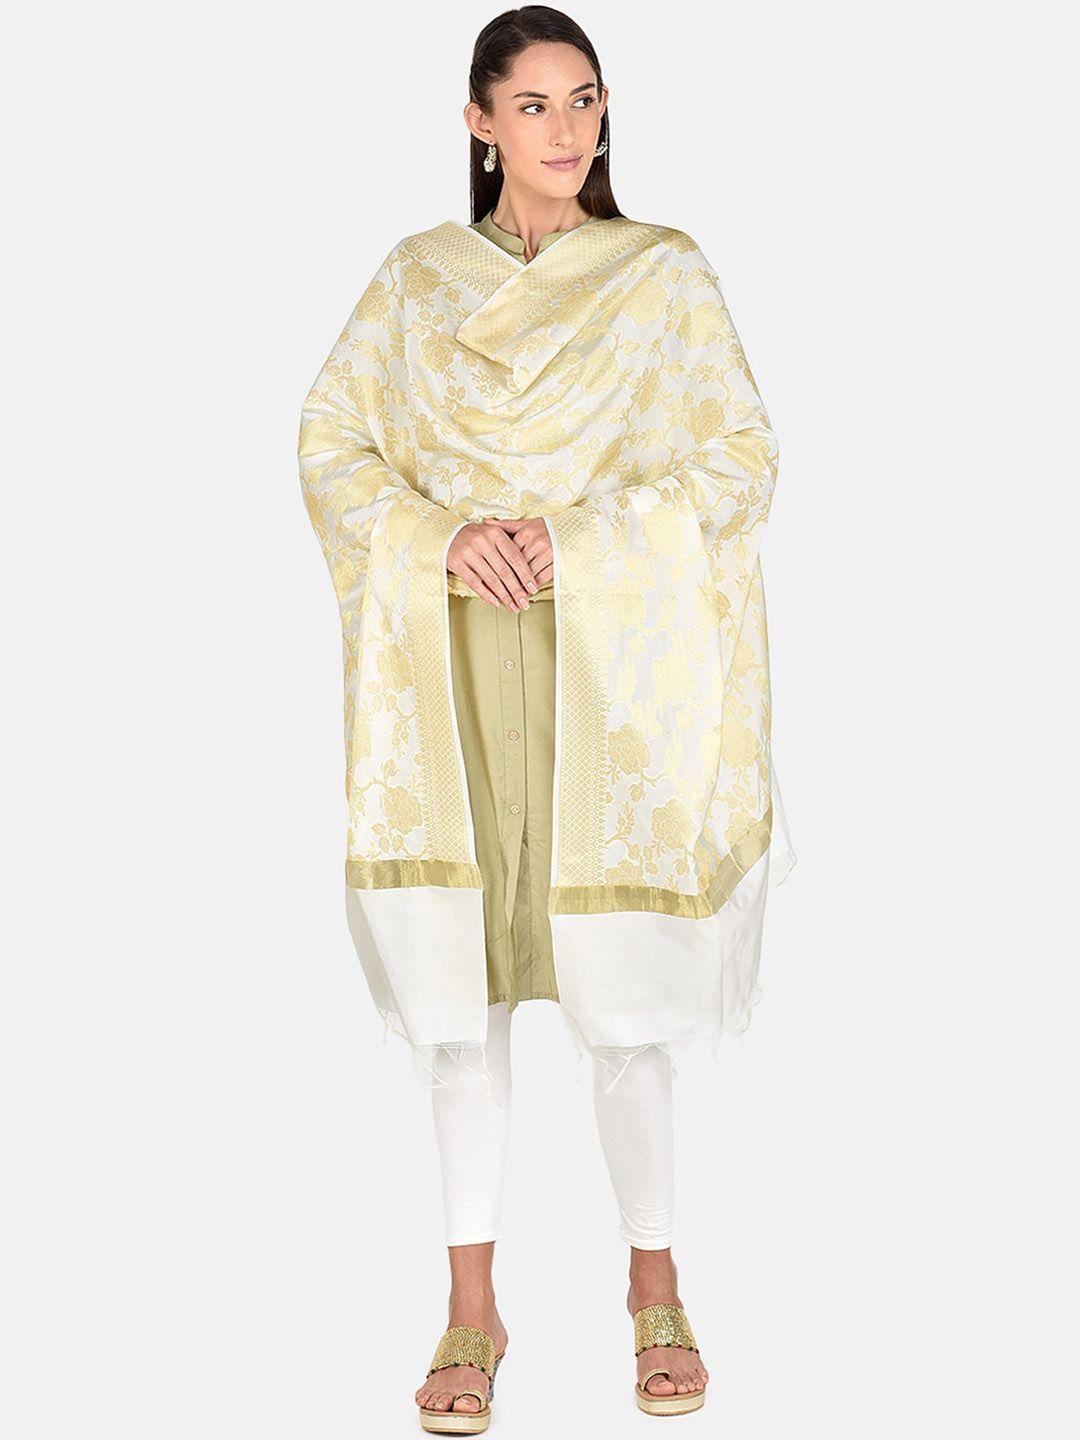 dupatta bazaar white & gold-toned woven design dupatta